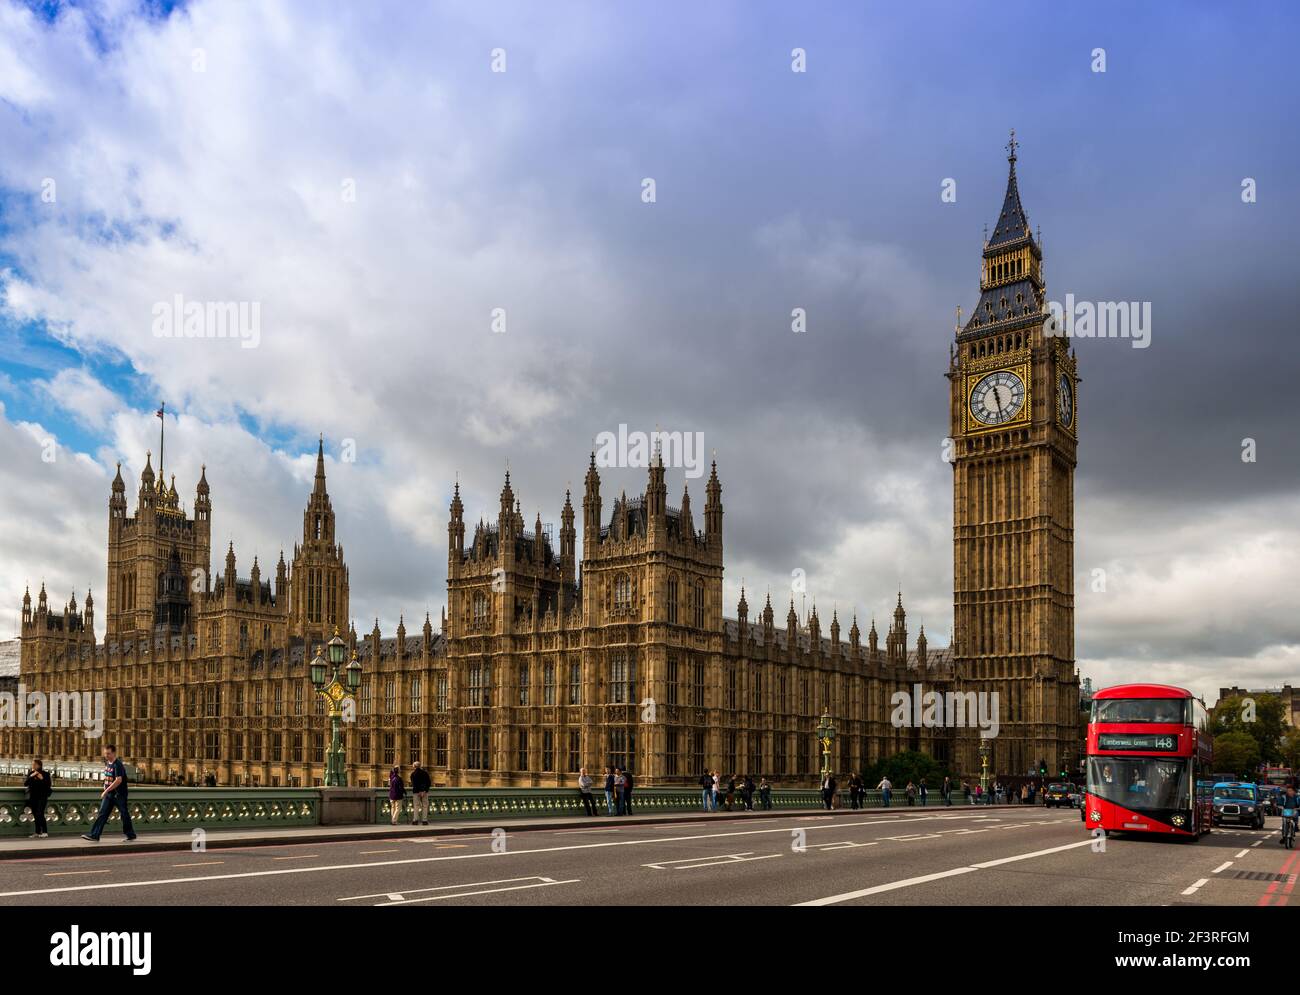 Le Parlement et un bus impérial rouge emblématique, sur le pont de Westminster à Londres, Angleterre, Royaume-Uni Banque D'Images